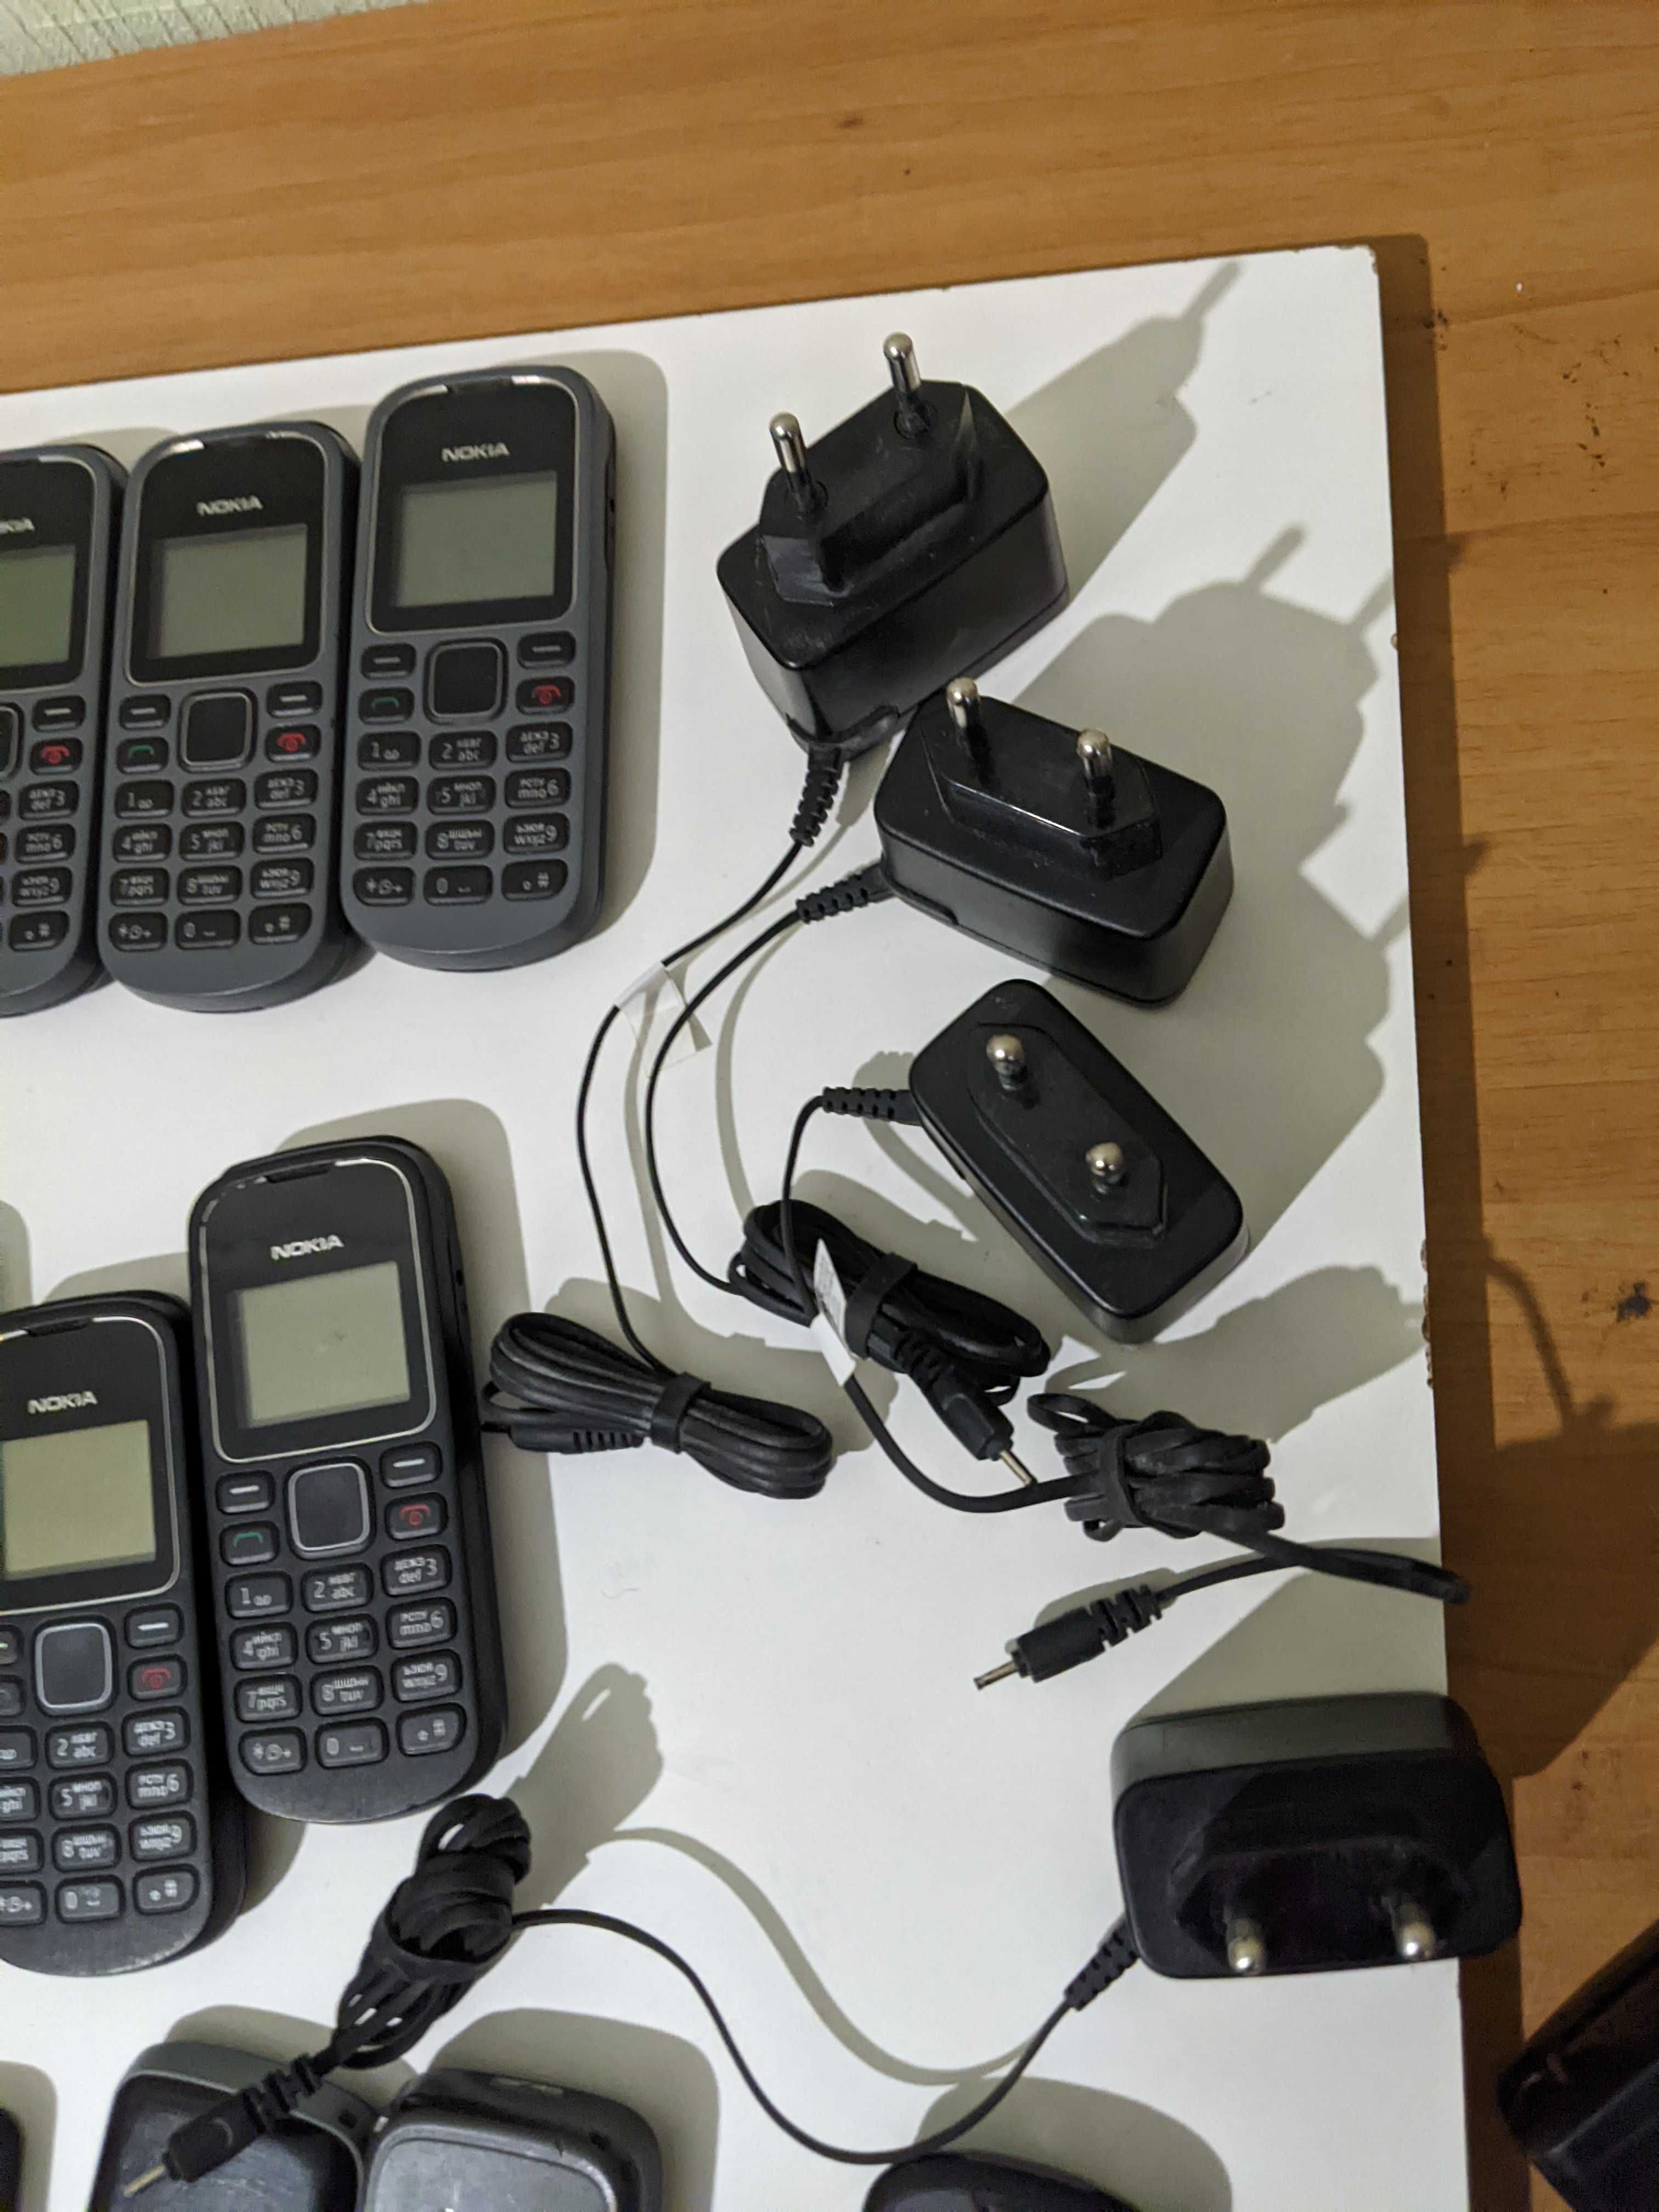 Телефоны Nokia 1280 RM-647, Nokia 105 RM-908,